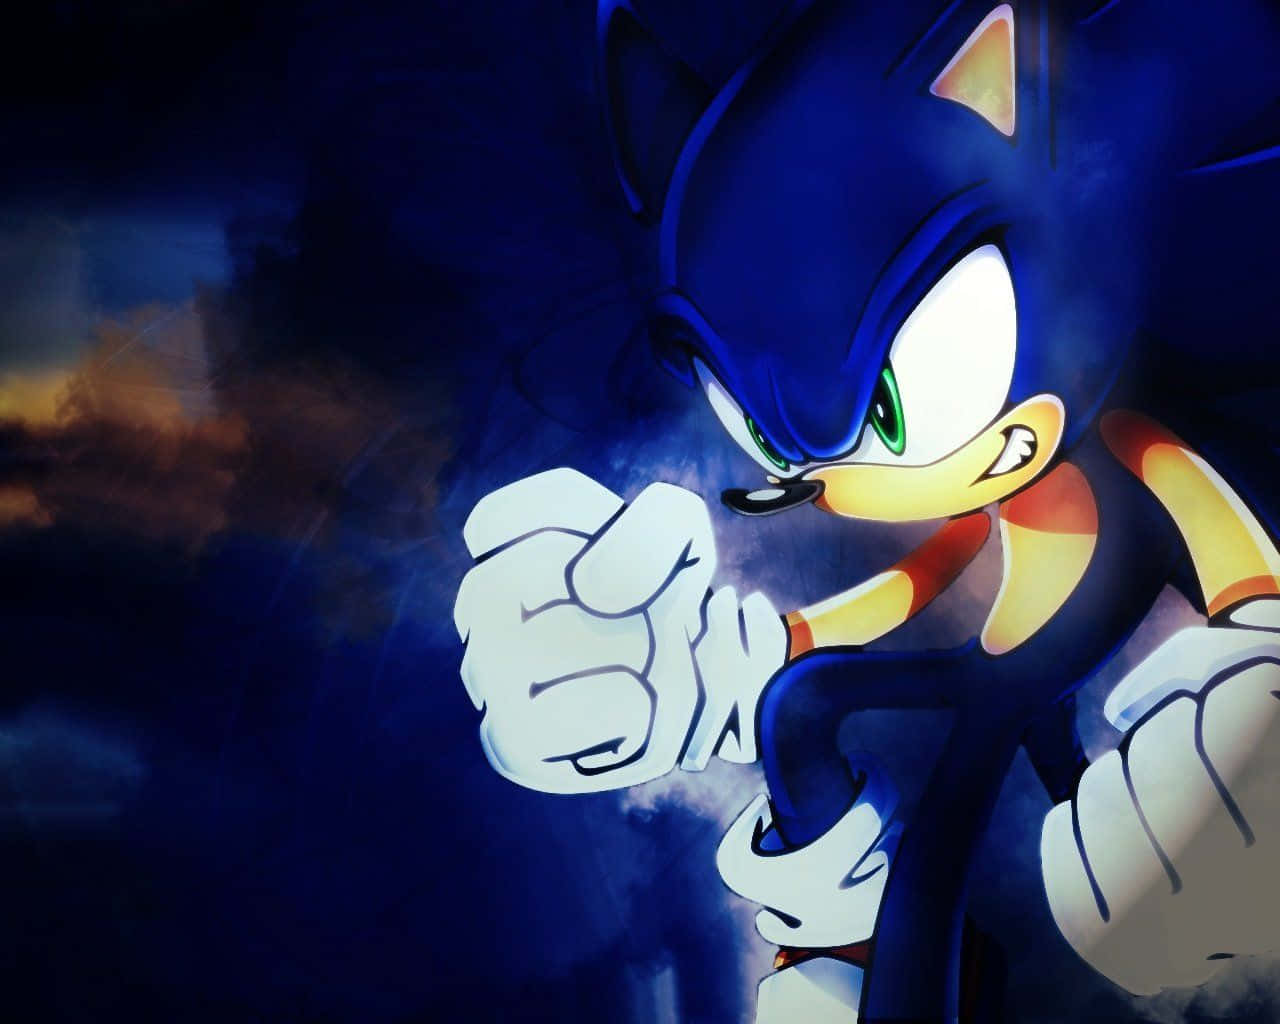 !Hastighed, kraft og attitude - Sonic the Hedgehog i 4K! Wallpaper